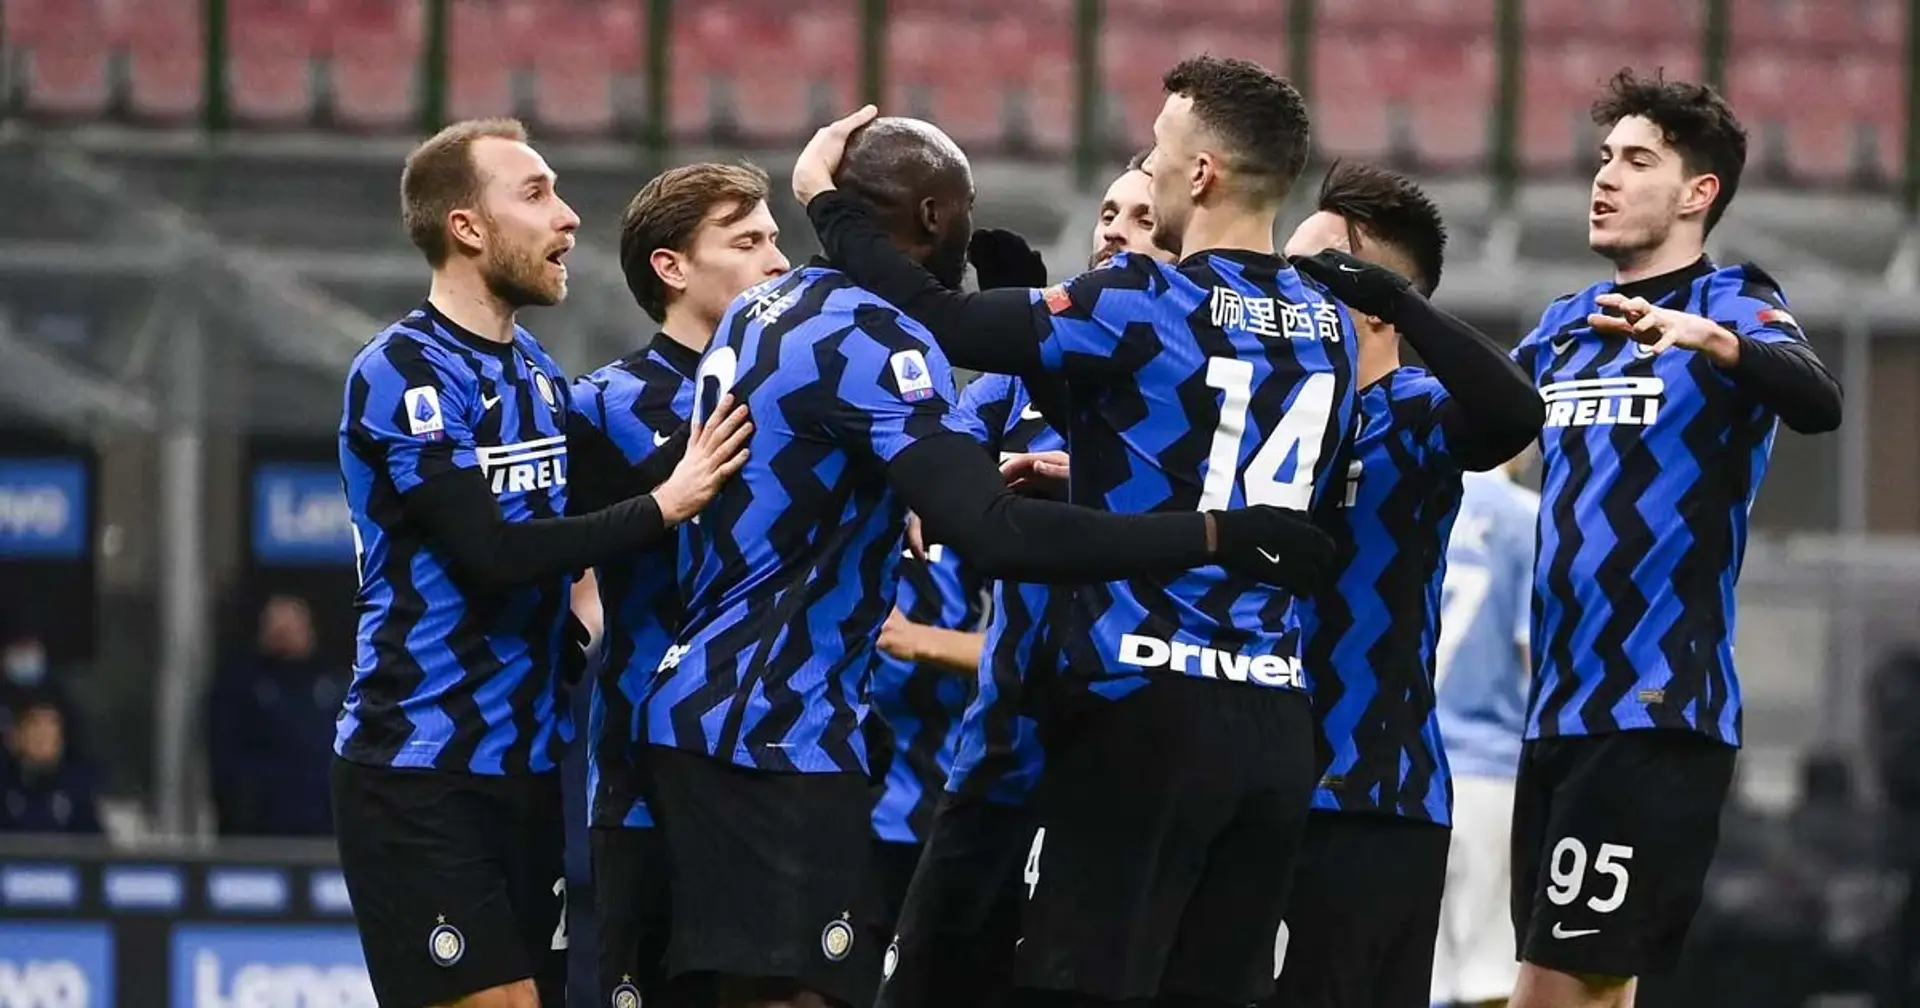 L'Inter si schiera contro il razzismo insieme alla Lega: il video pubblicato dal club nerazzurro